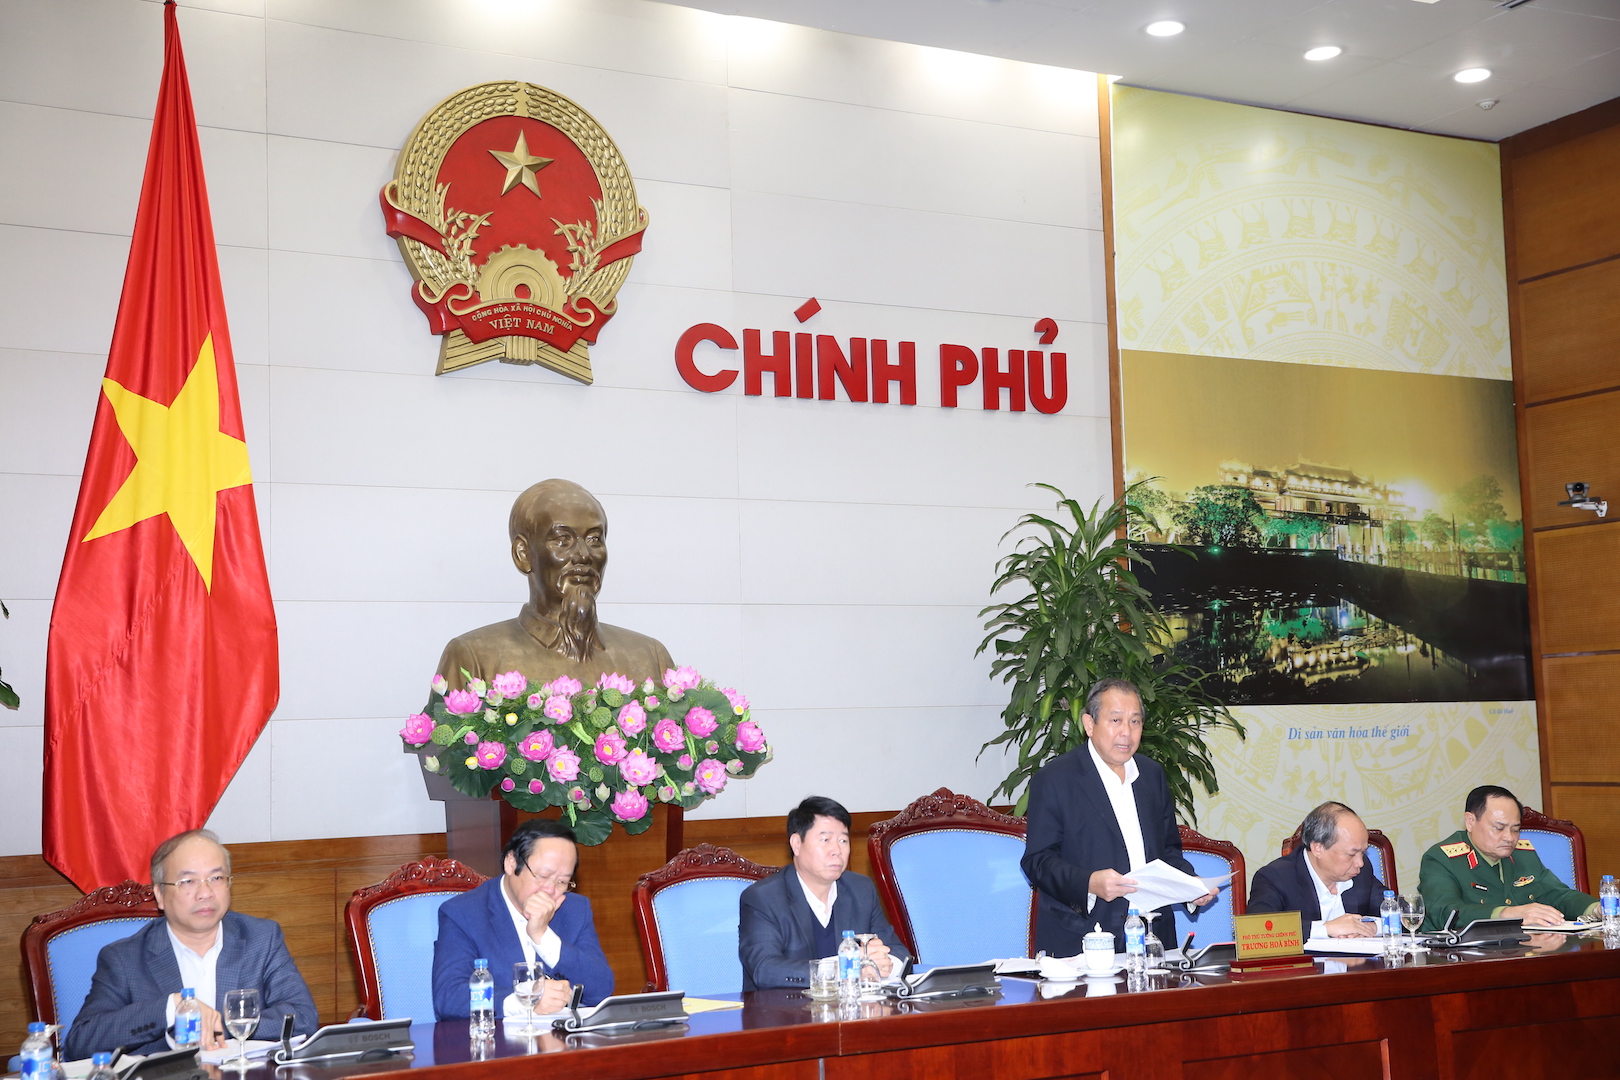 Phó Thủ tướng Thường trực Trương Hòa Bình phát biểu chỉ đạo tại cuộc họp về khắc phục sự cố môi trường 4 tỉnh miền Trung. Ảnh: VGP/Lê Sơn